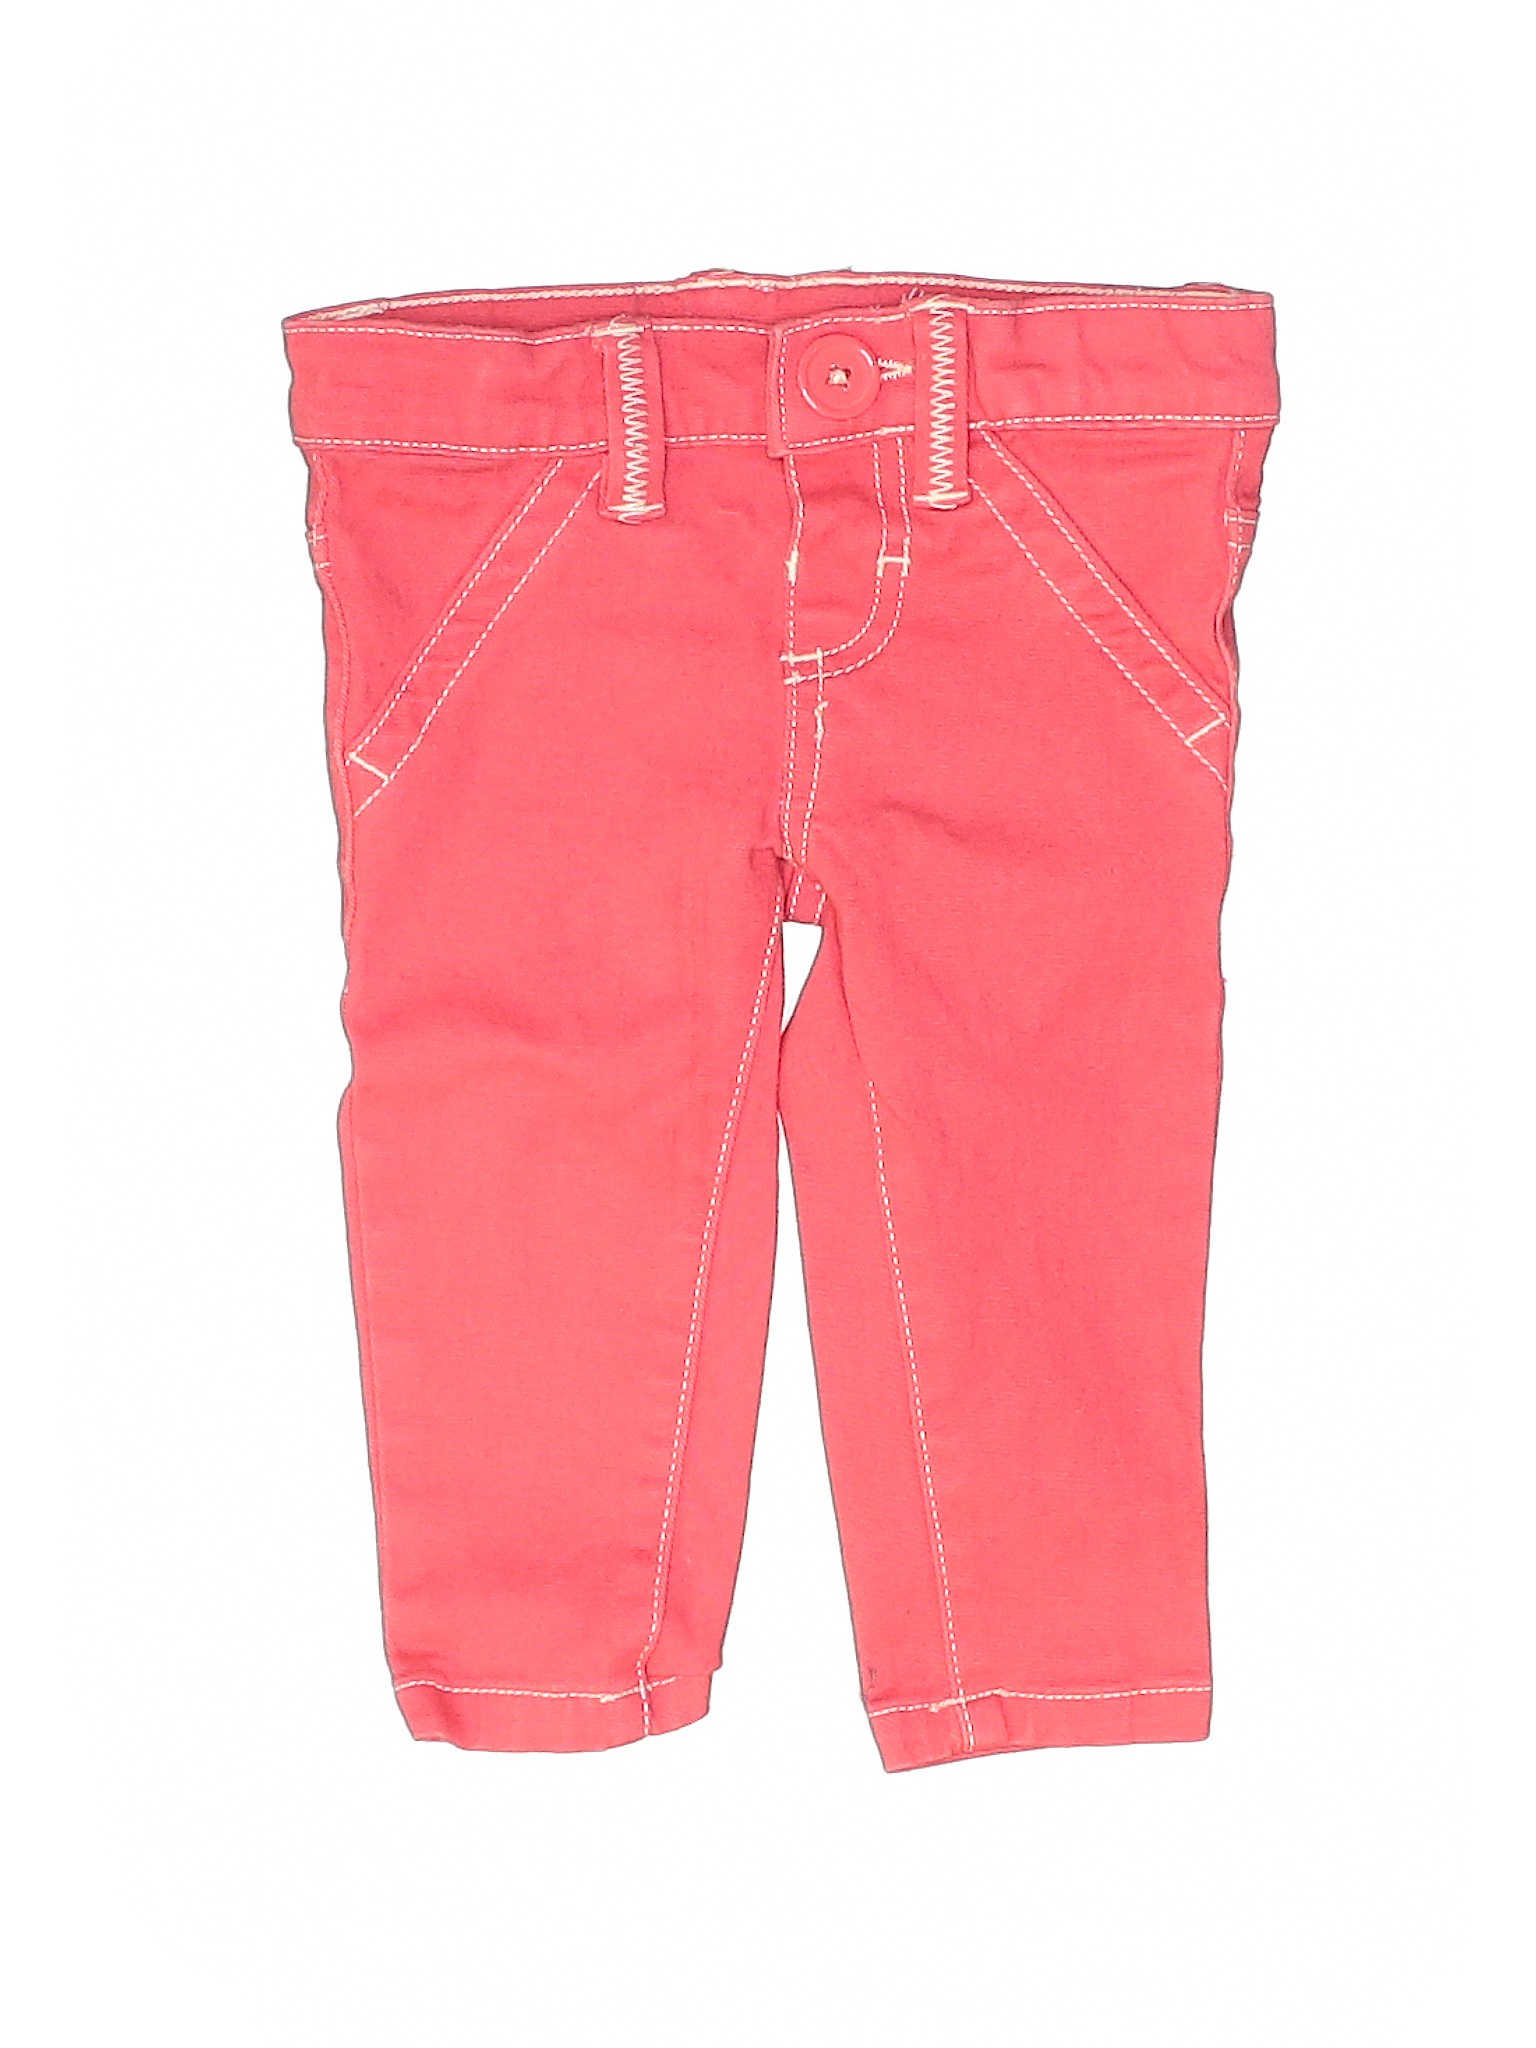 Sprockets Girls Pink Jeans 12 Months | eBay